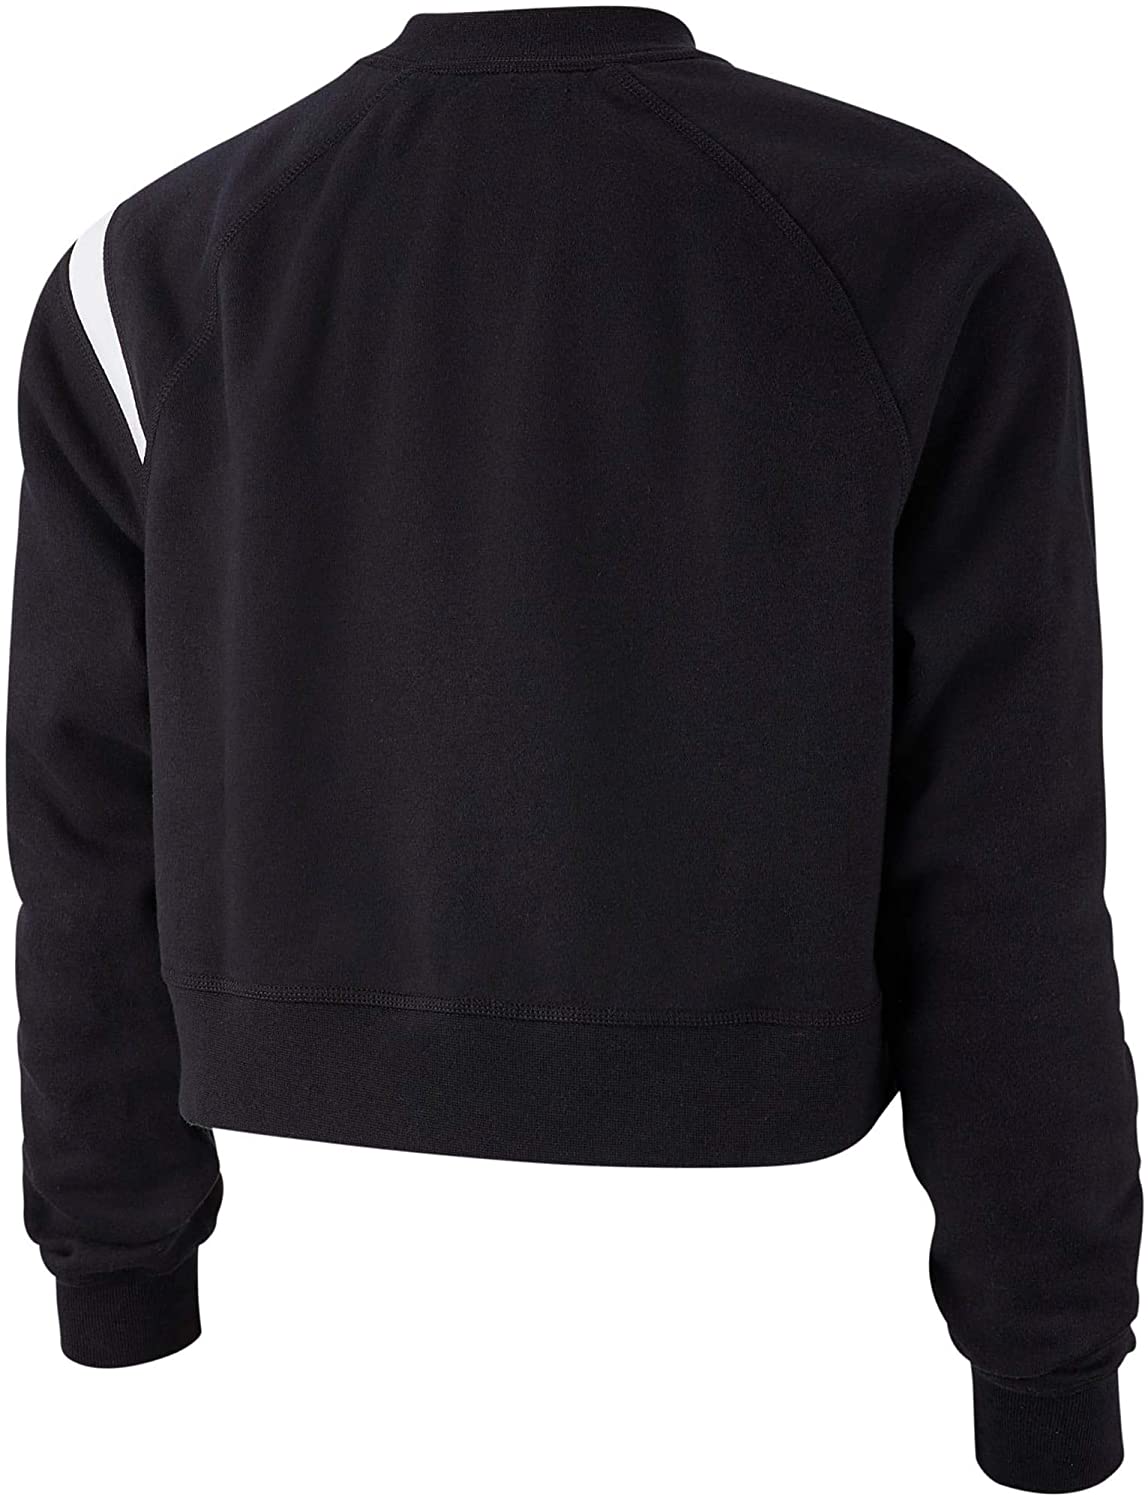 Nike Women's Sportswear Swoosh Fleece Crew Sweatshirt (L, Black/White)